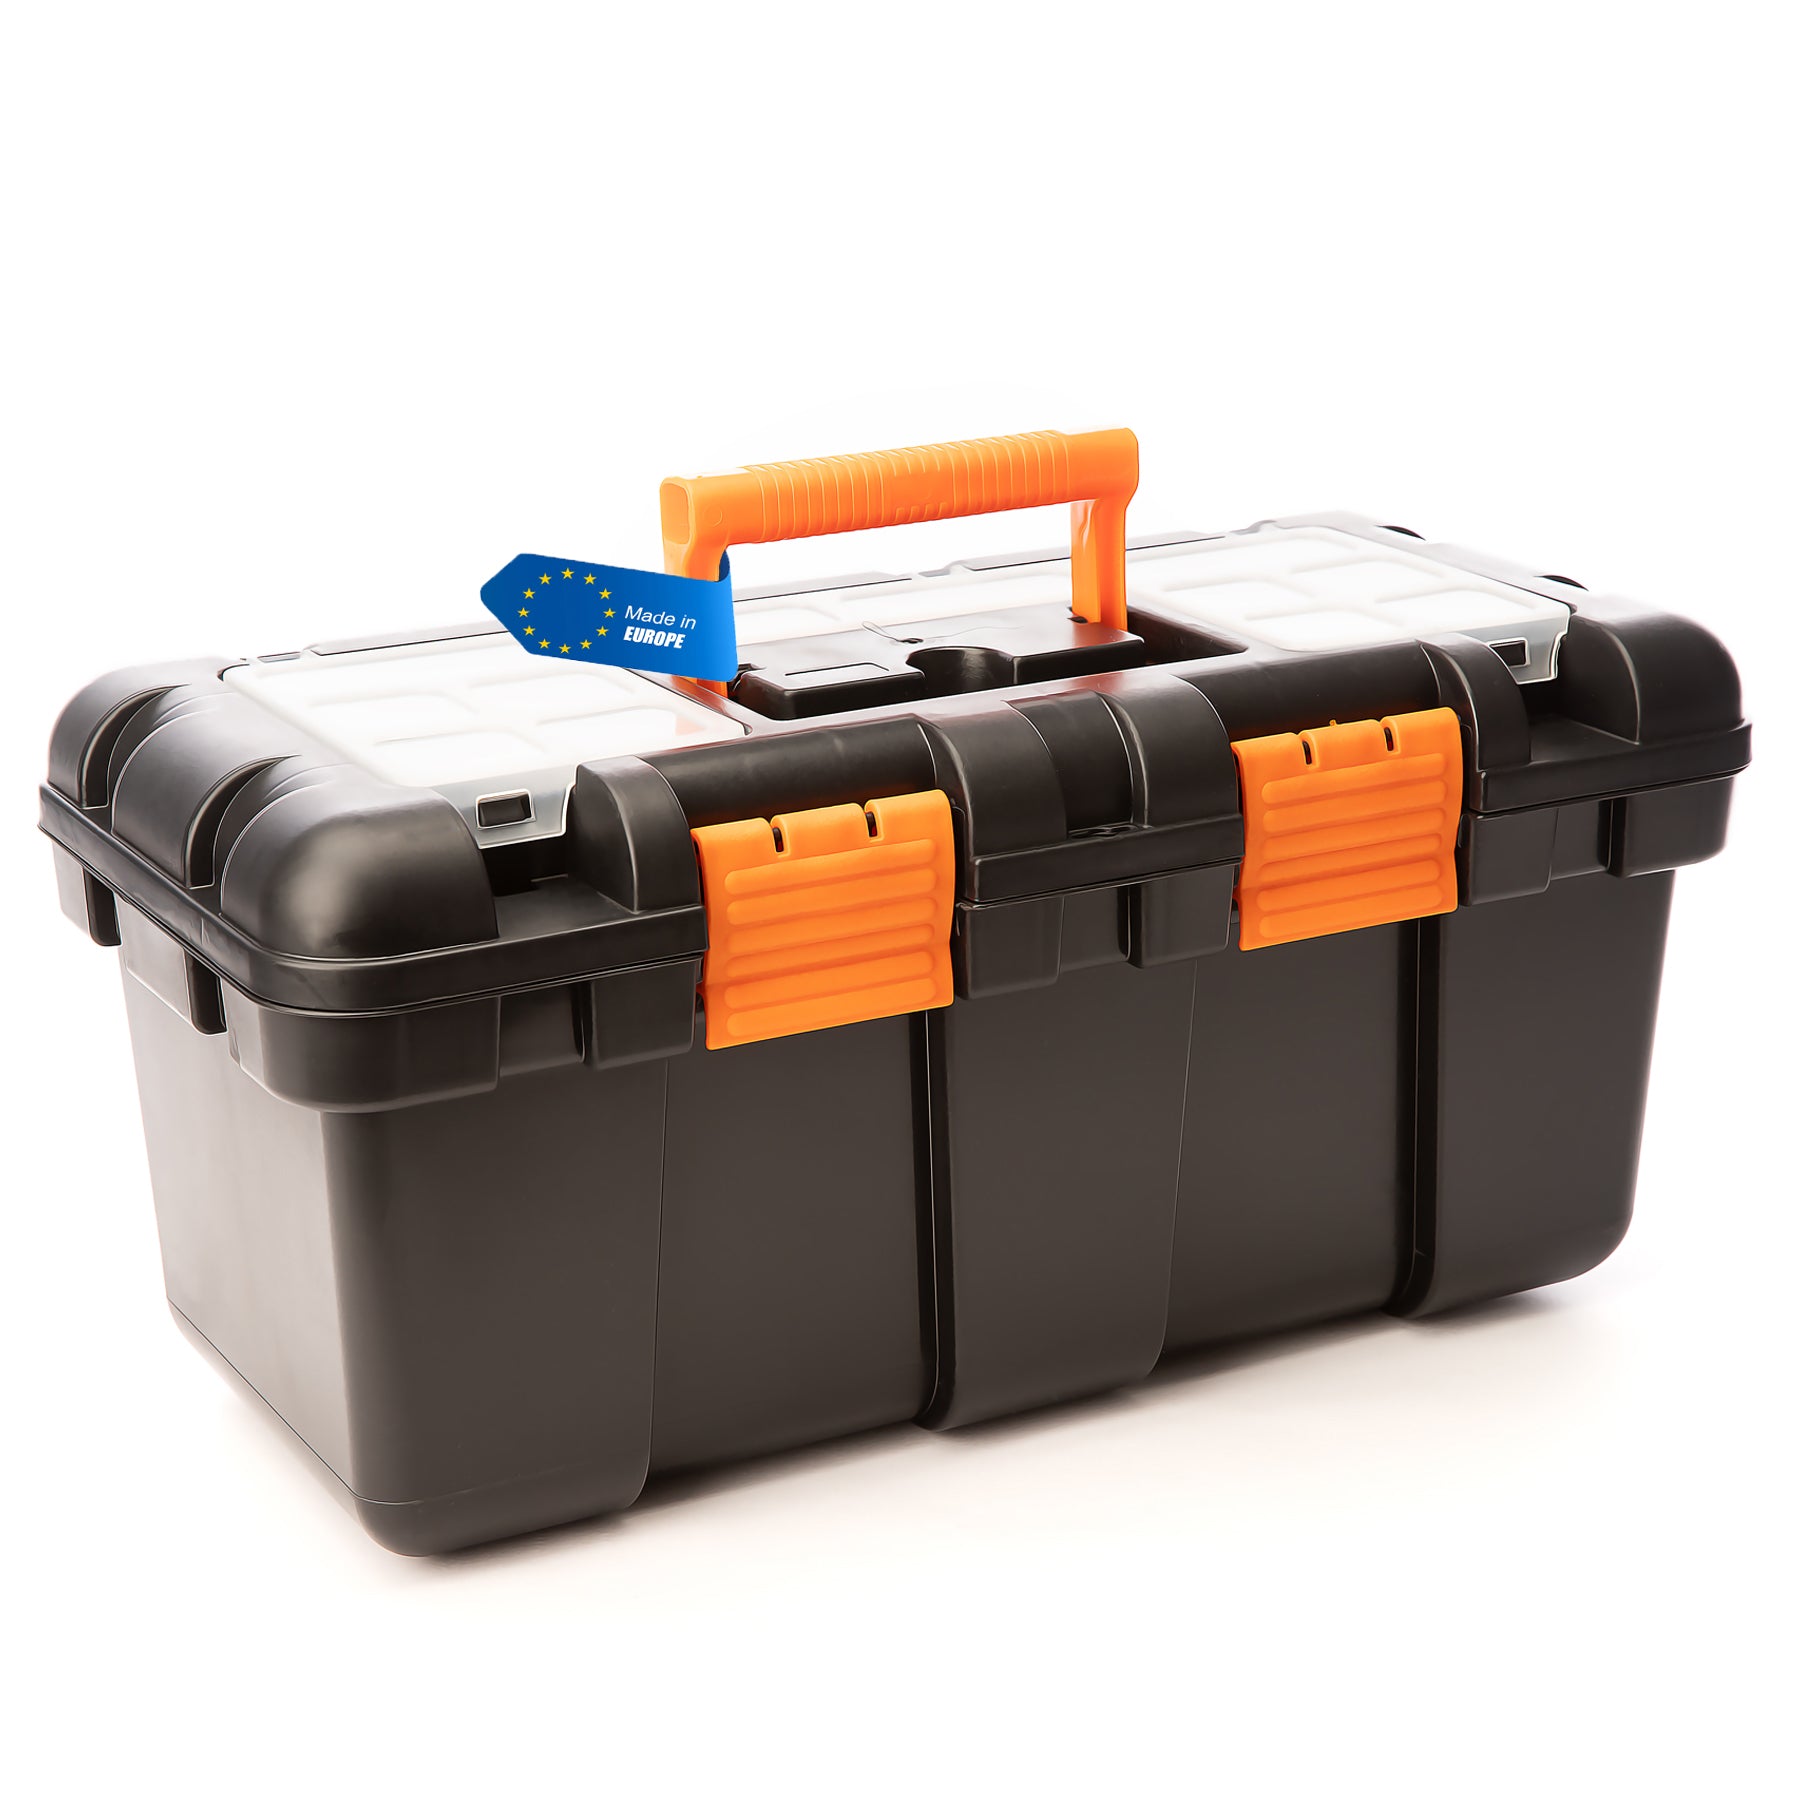 BigDean Werkzeugkoffer leer - 51x25x23cm - aus schlagfestem Kunststoff - Werkzeugkiste mit Innenablage - auch als Angelbox geeignet - Werkzeugkasten für Heim- & Handwerker - Made in EU 1